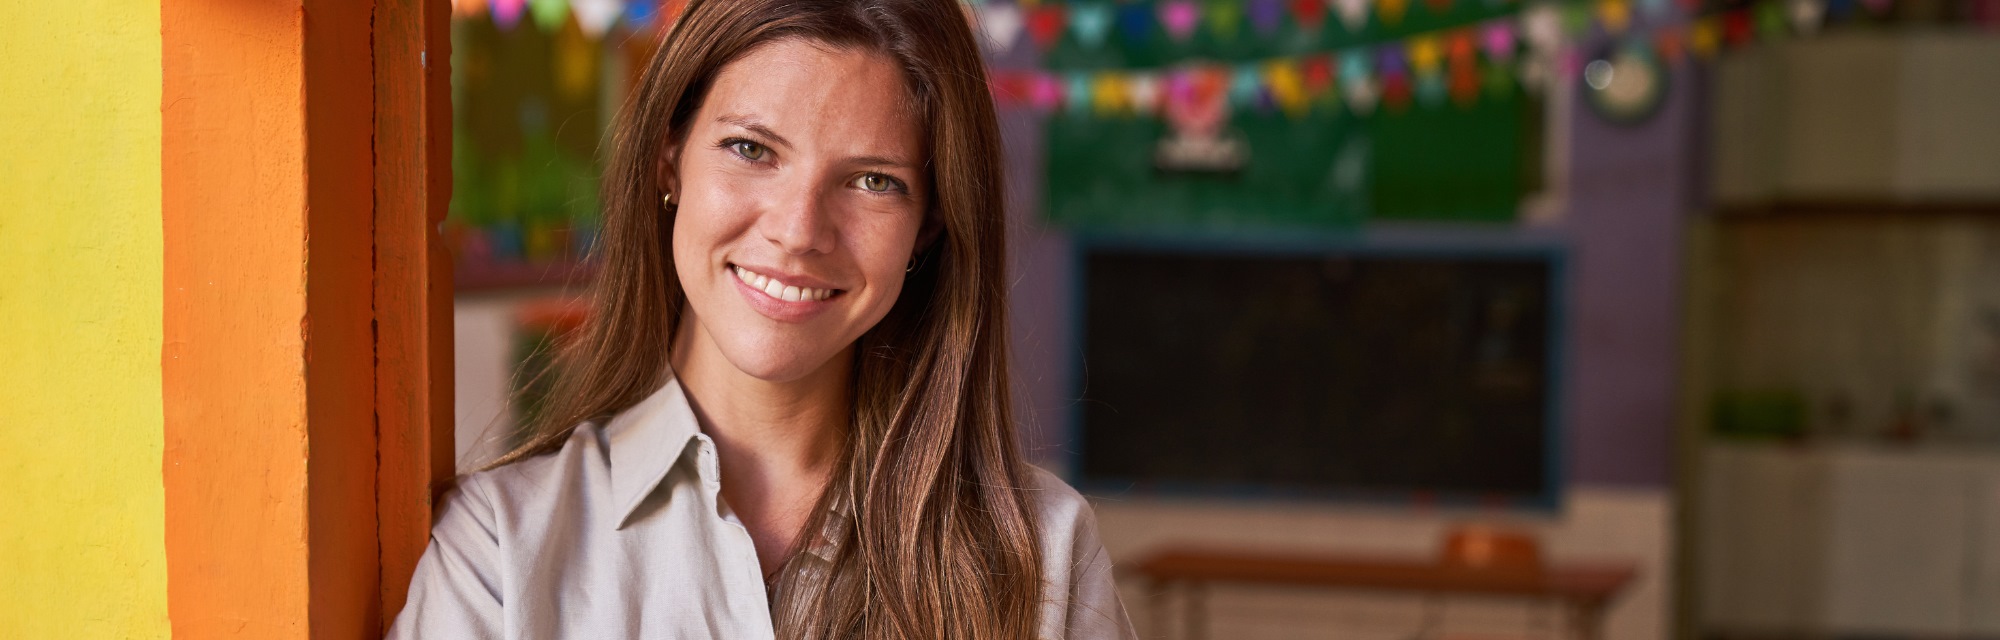 Imagen de portada de curso "Liderazgo docente para el desarrollo de comunidades profesionales de aprendizaje" - Se visualiza una Mujer joven sonriendo.